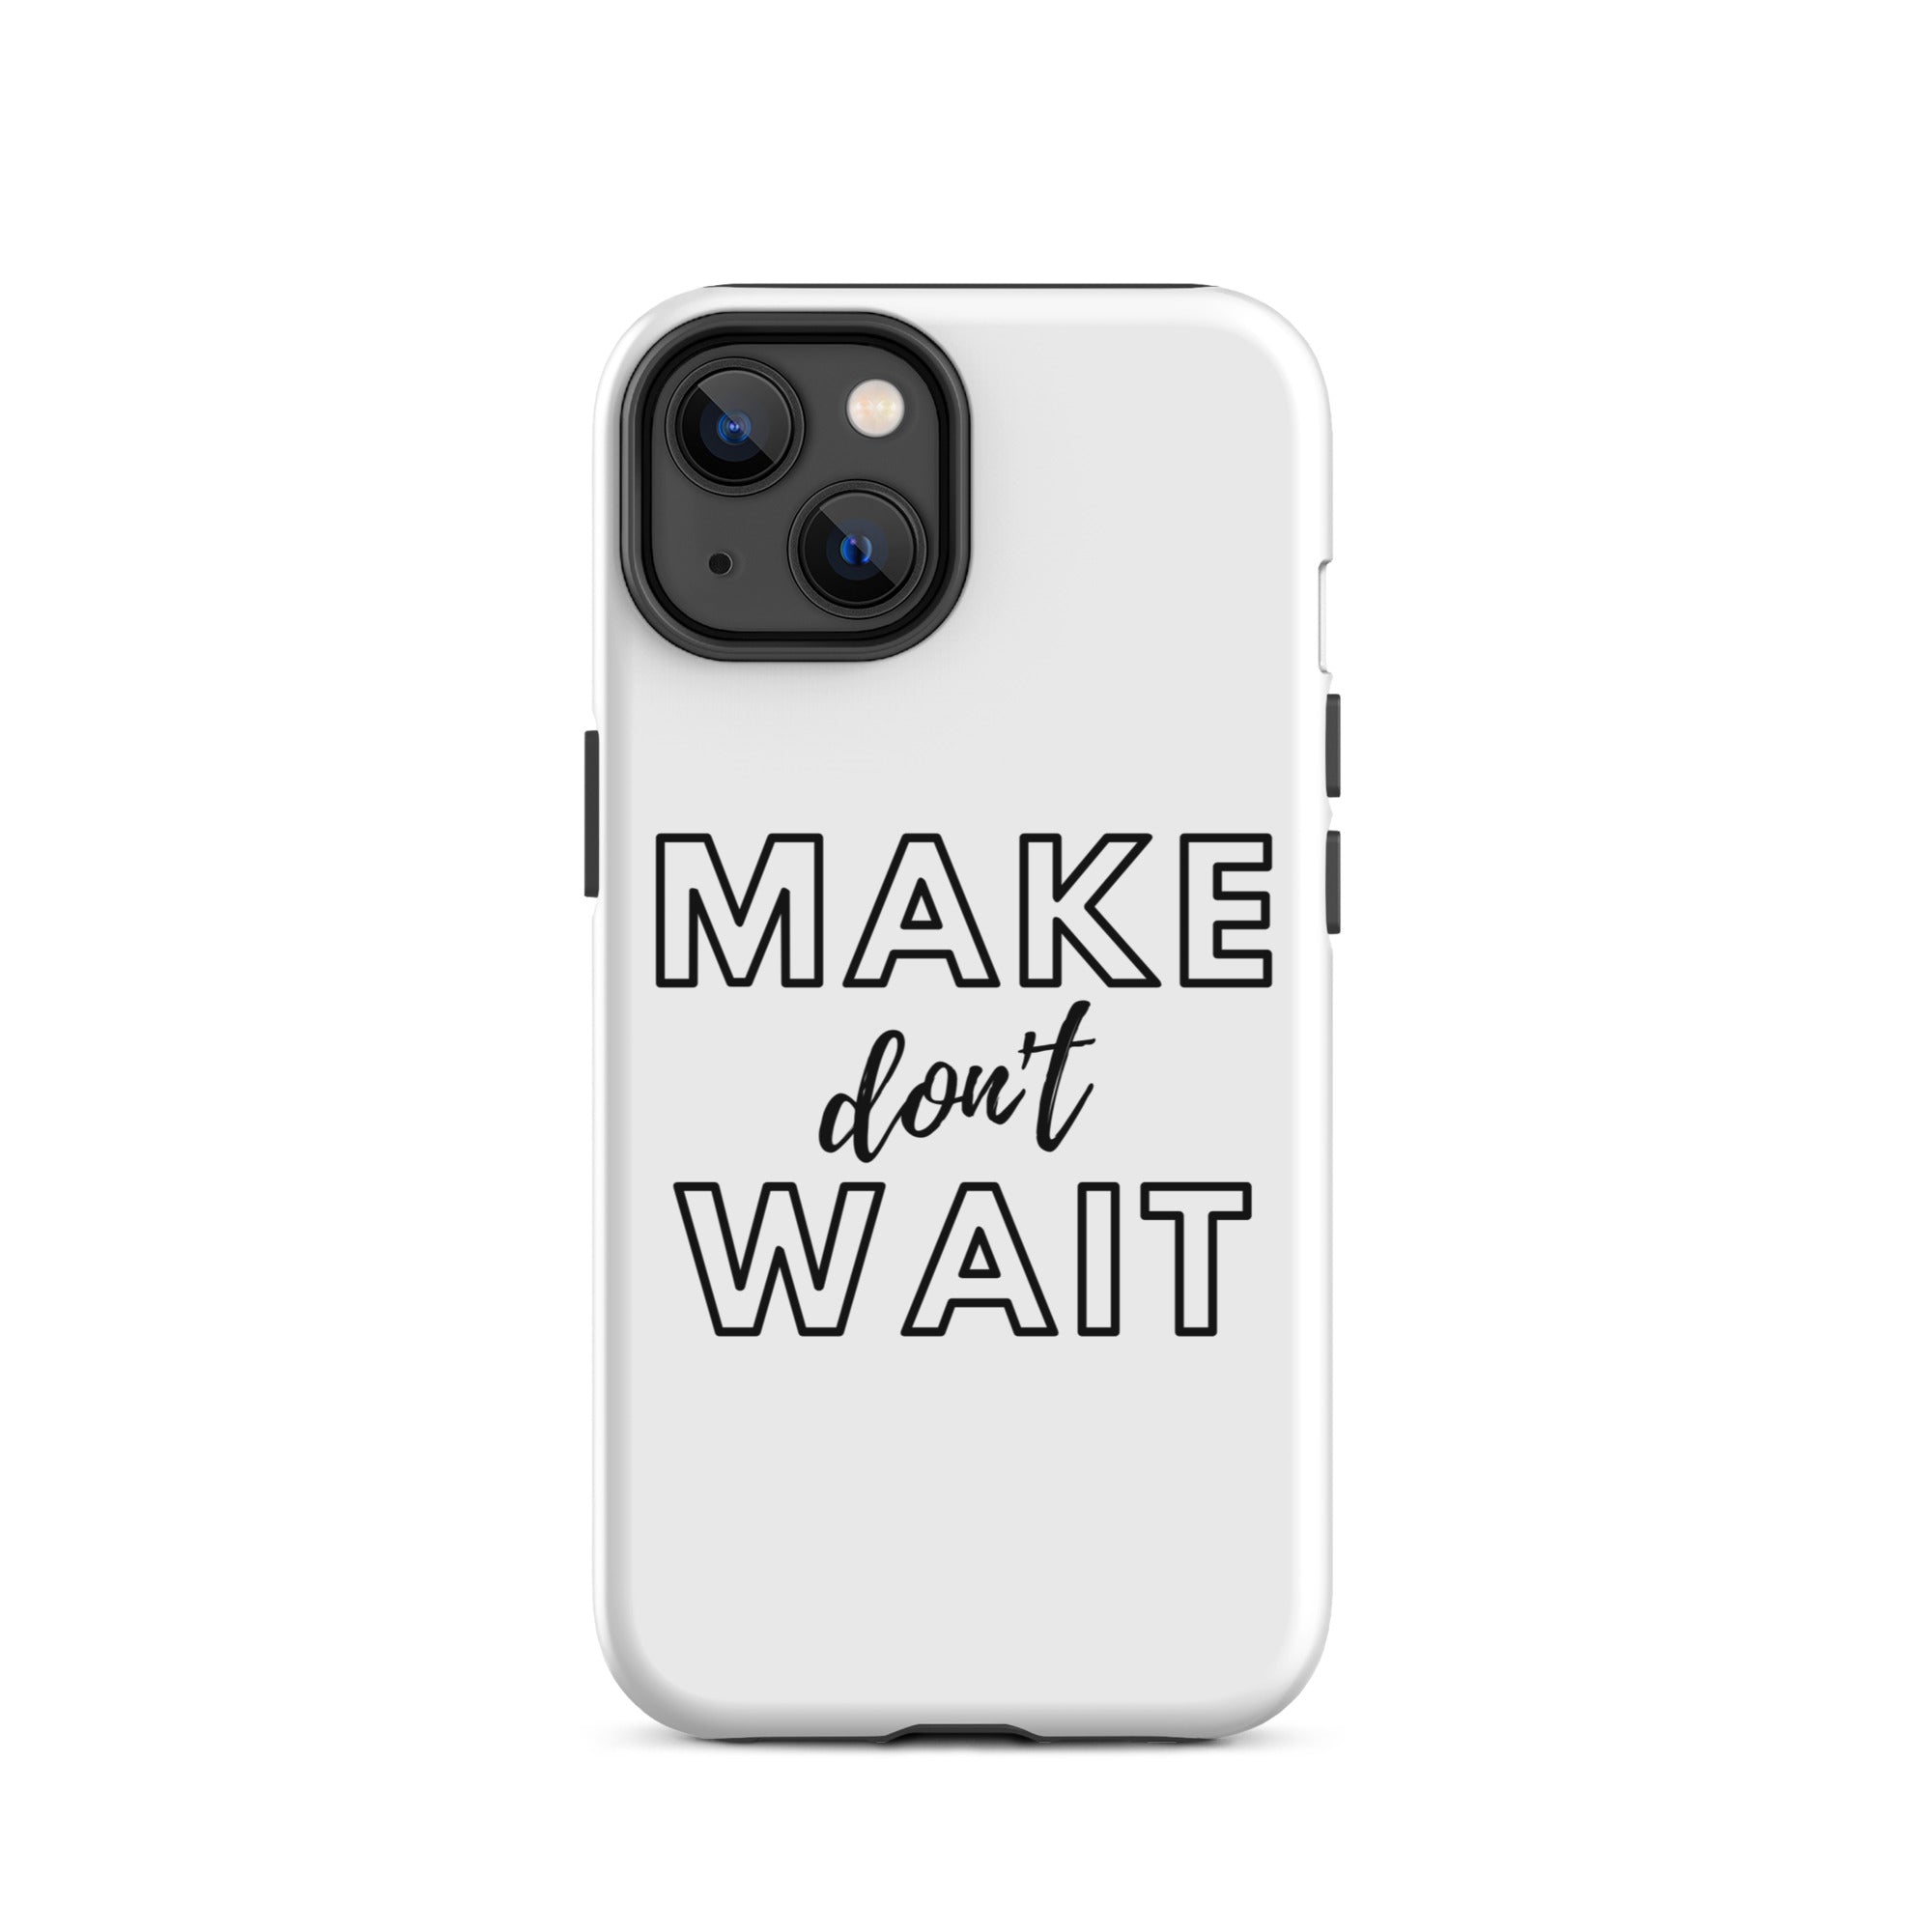 Make don't Wait - Tough iPhone case